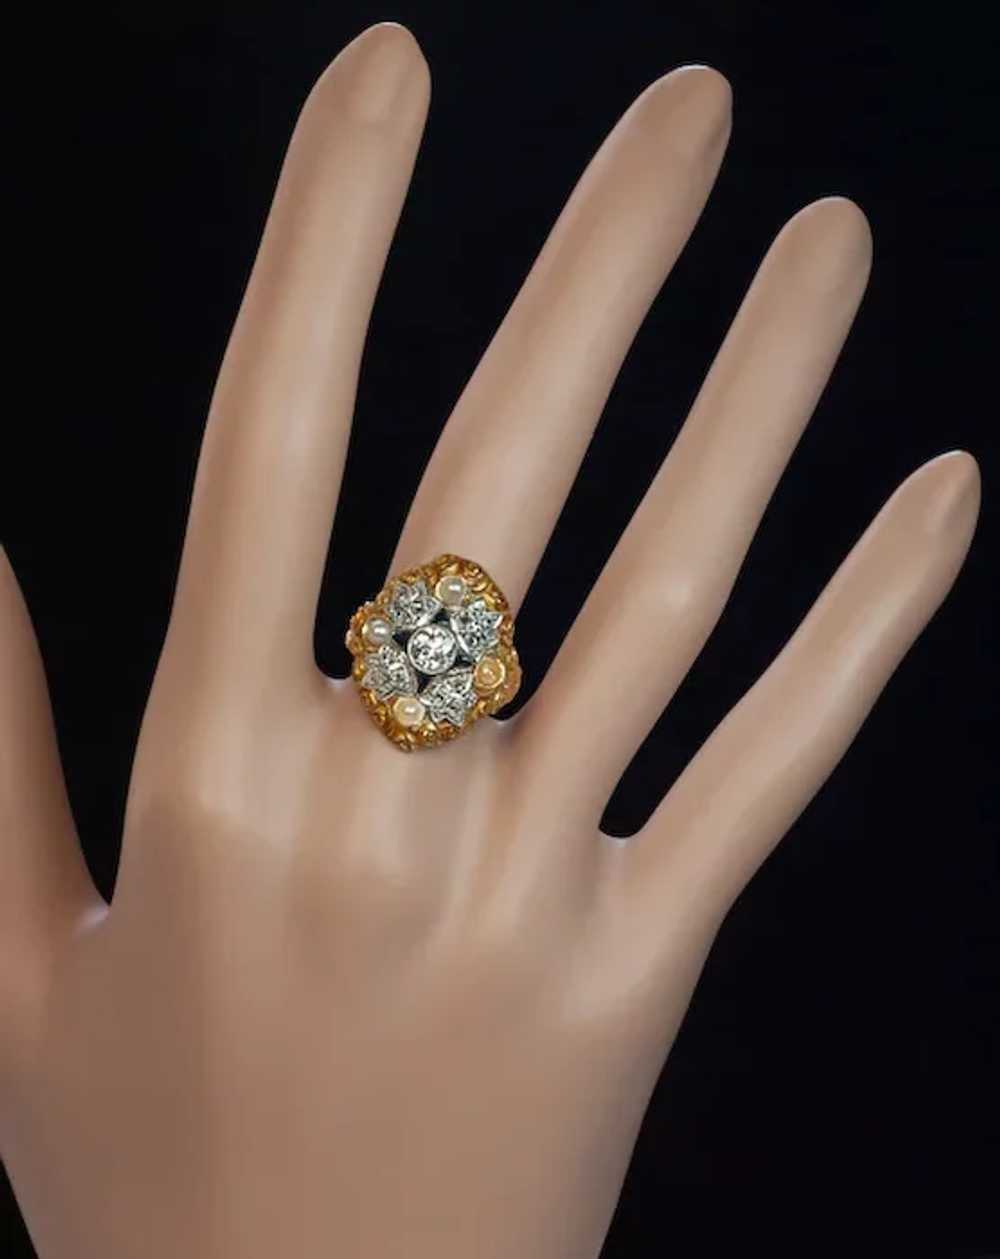 Antique Art Nouveau Diamond, Pearl, Enamel Ring - image 4